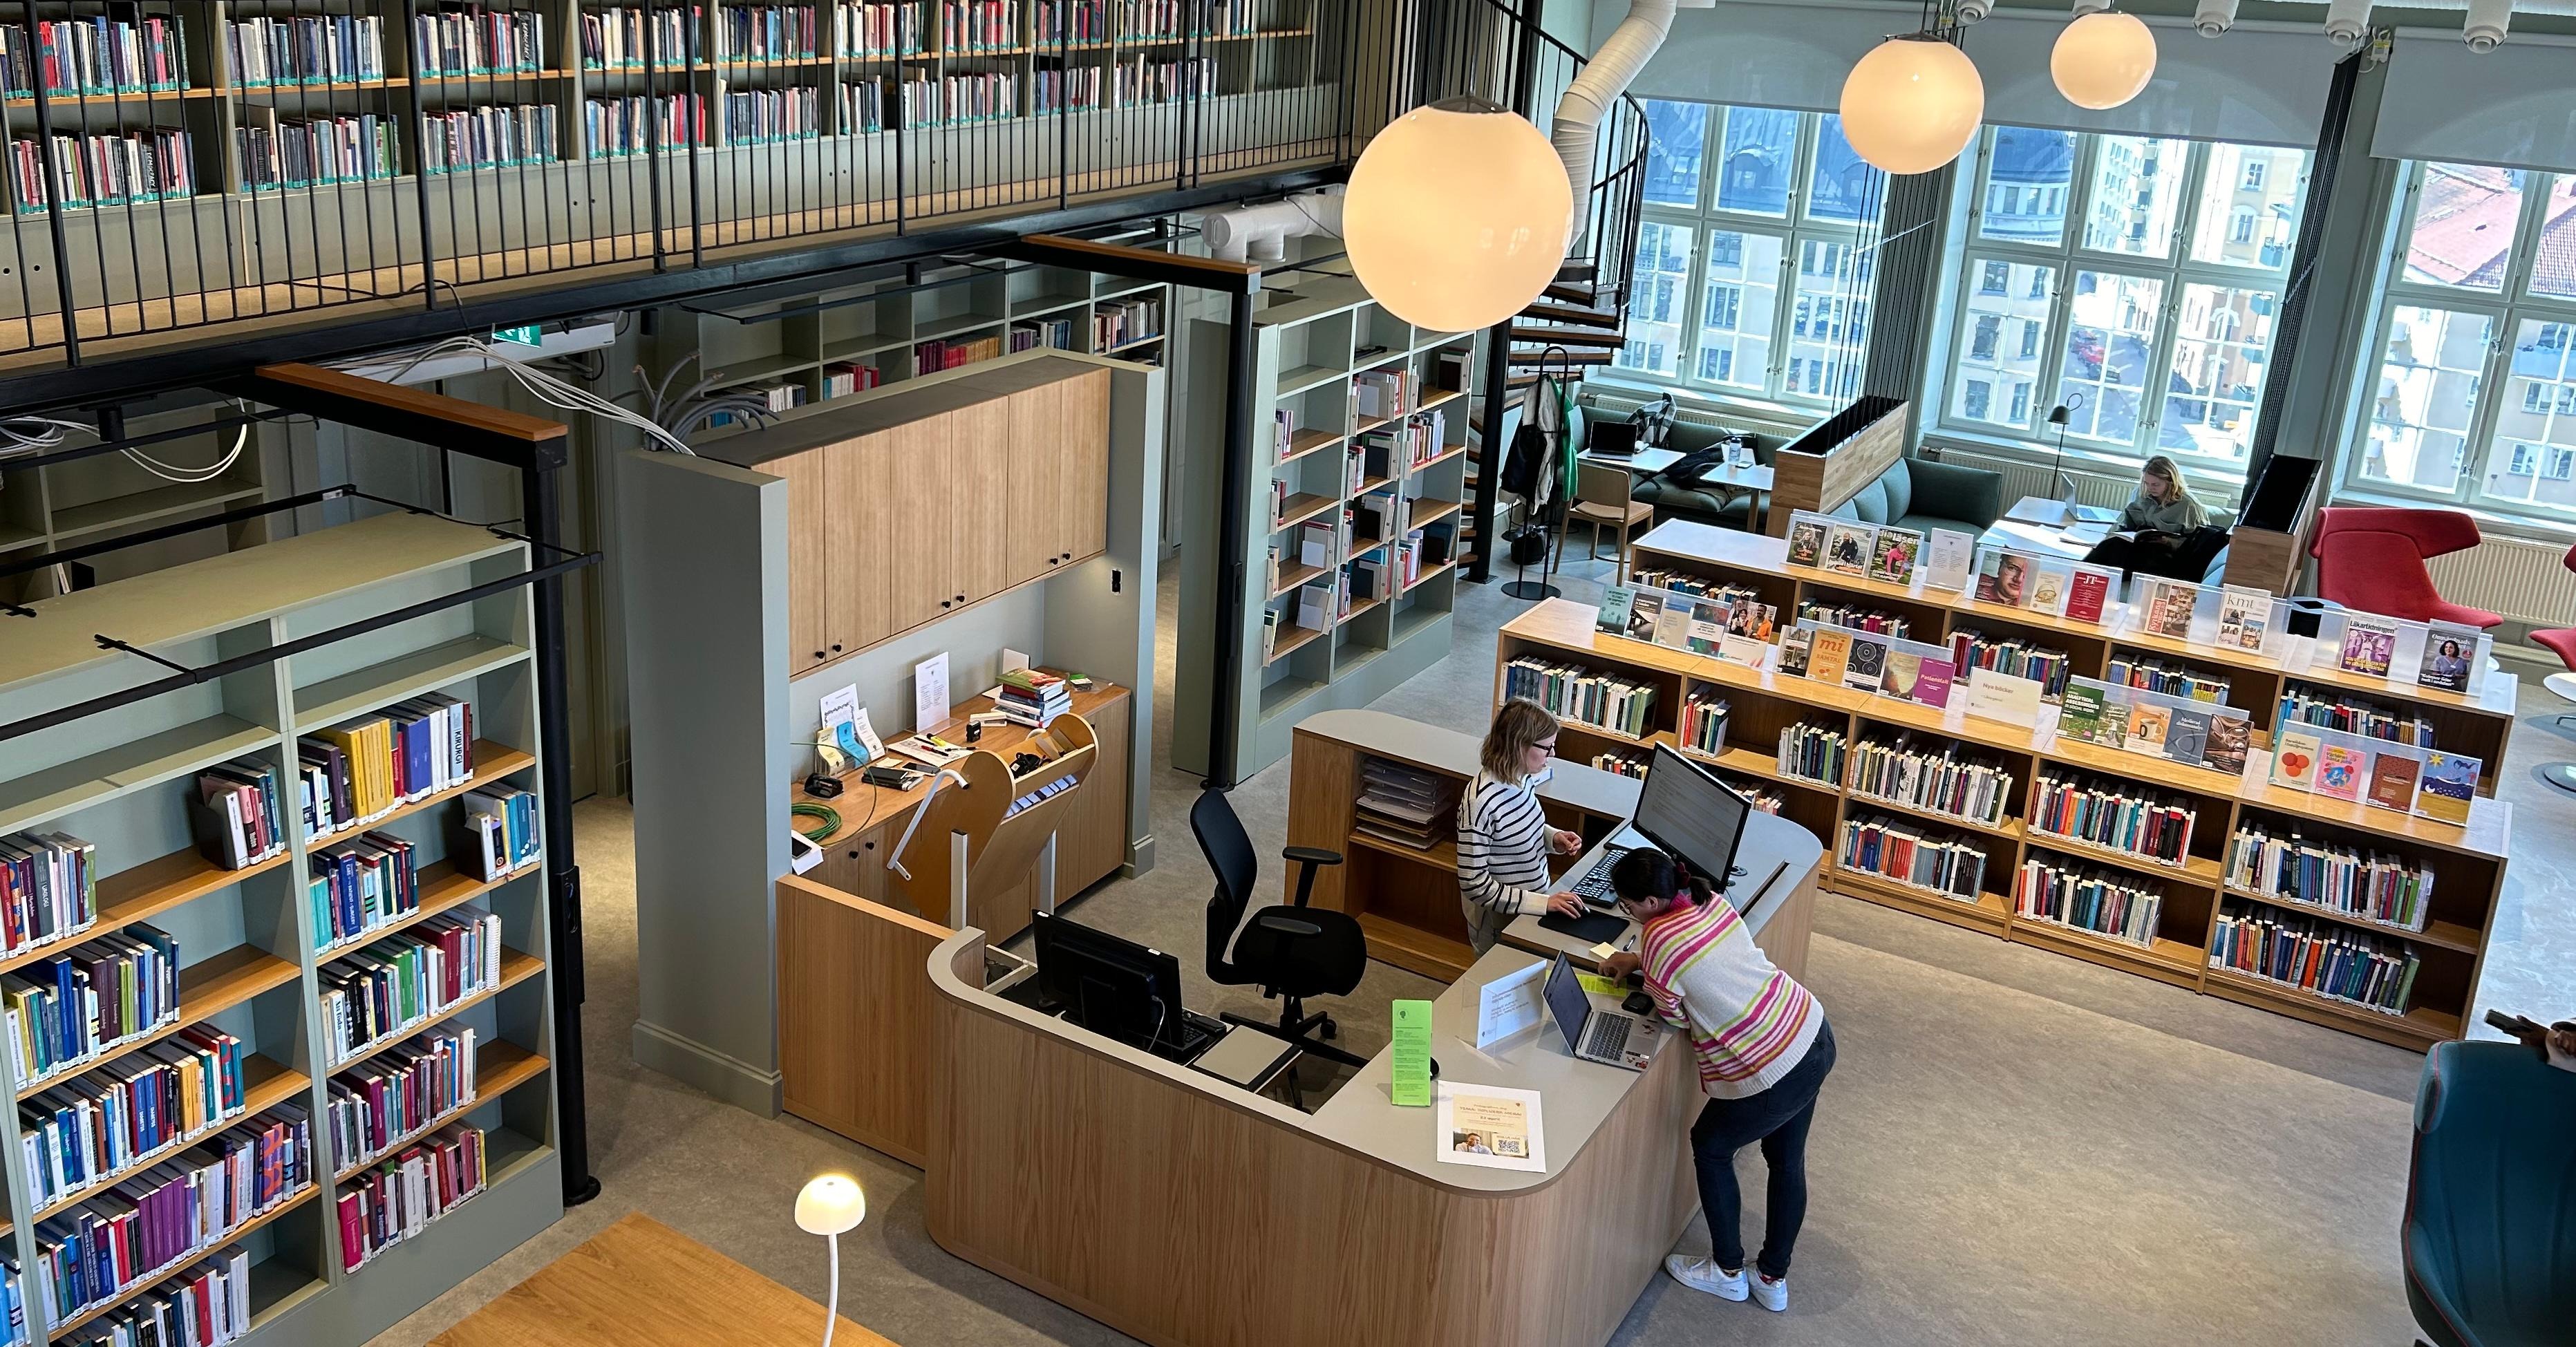 En överblicksbild i biblioteket där allting ses uppifrån: hyllor, bibliotekariedesken, studieplatser, fåtöljer och ett fåtal personer